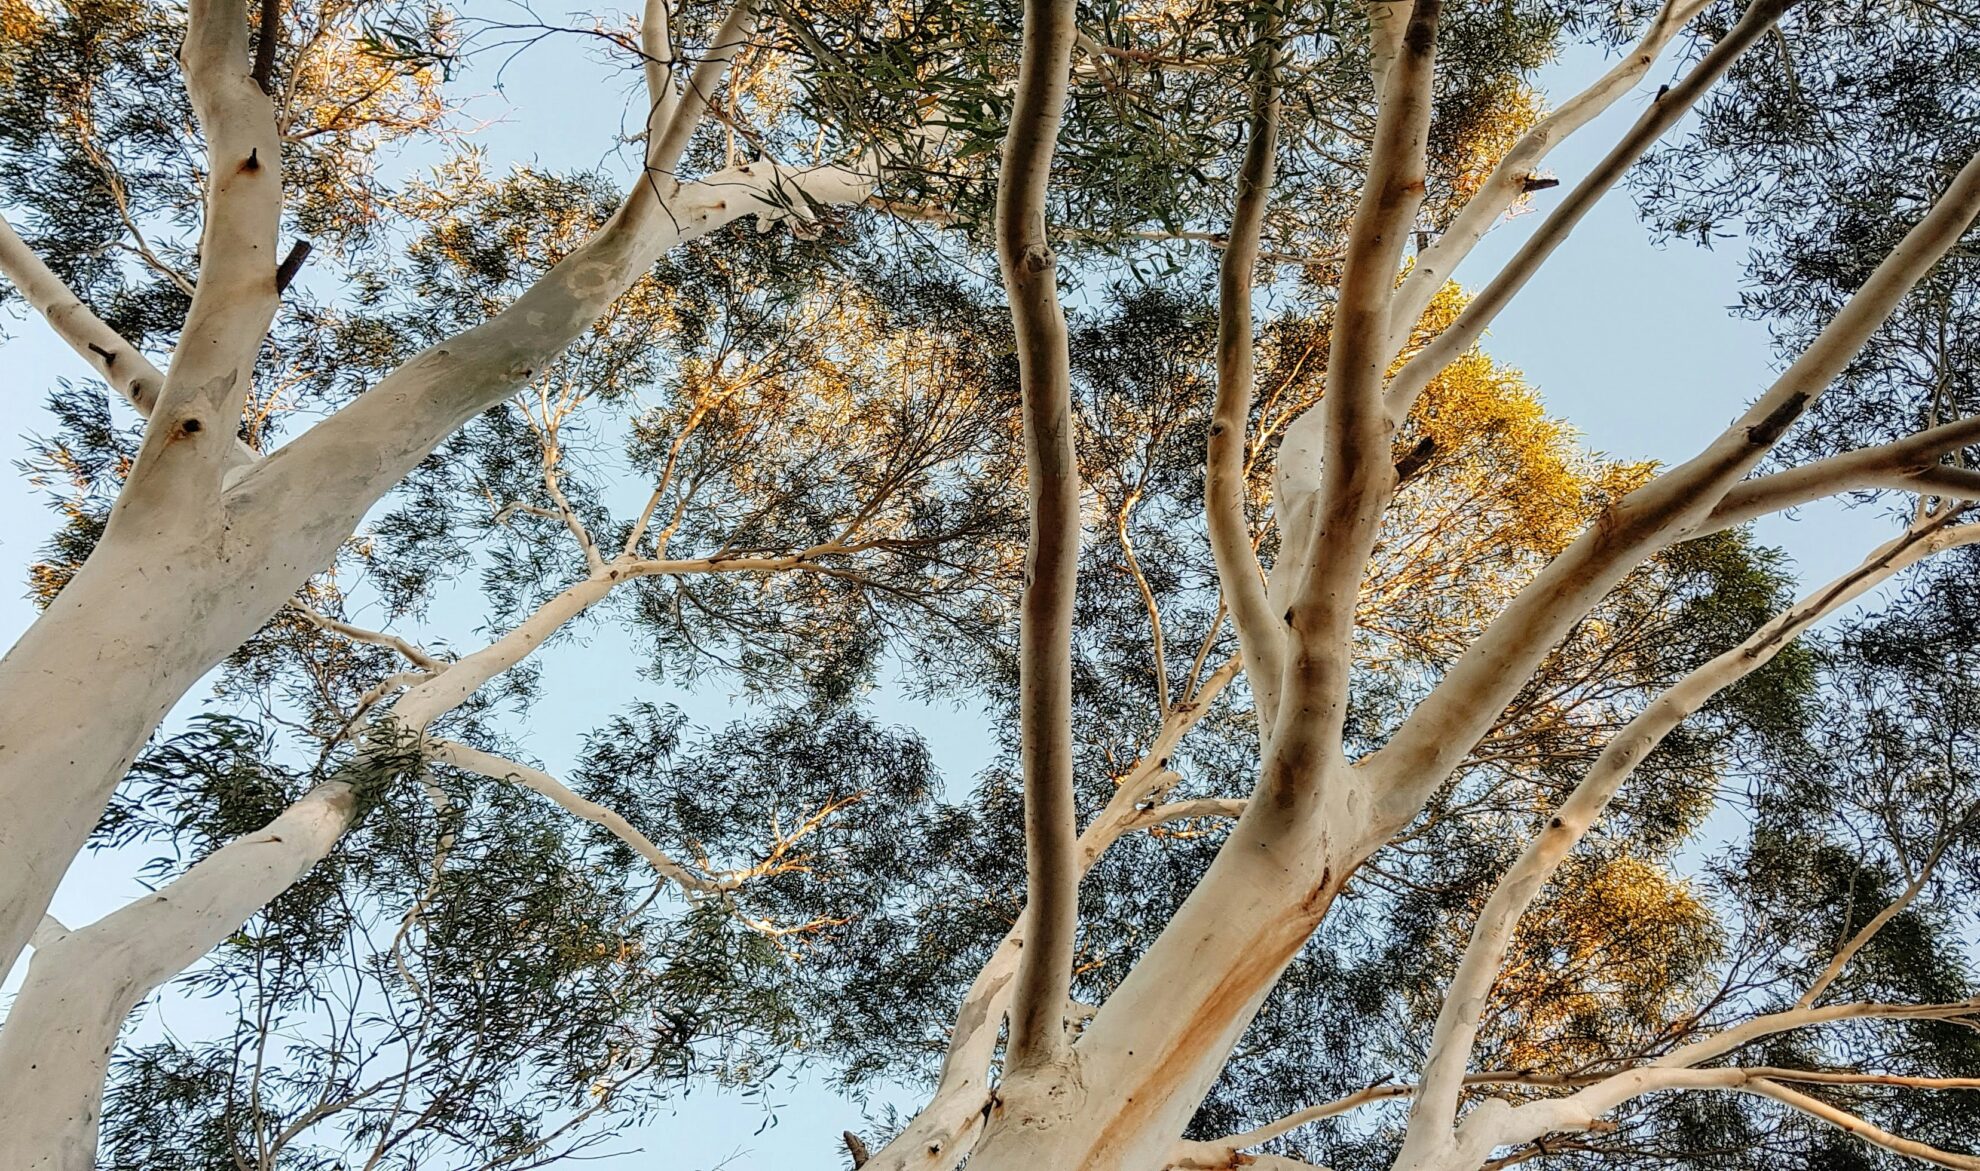 A canopy of eucalyptus trees against a blue sky